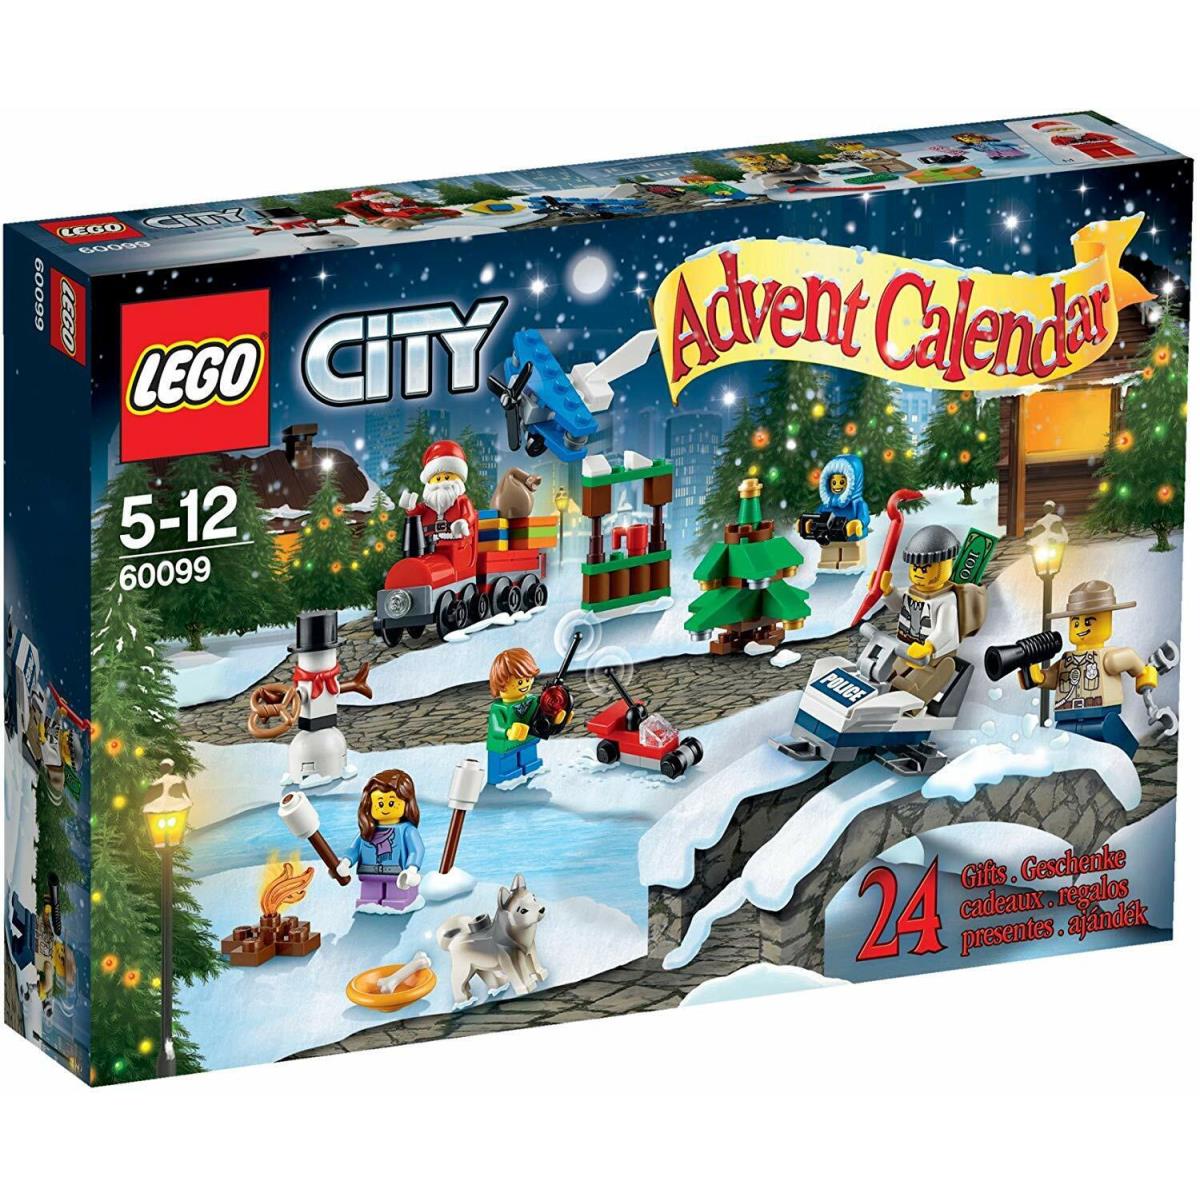 Lego City Advent 2015 Calendar 60099 Set